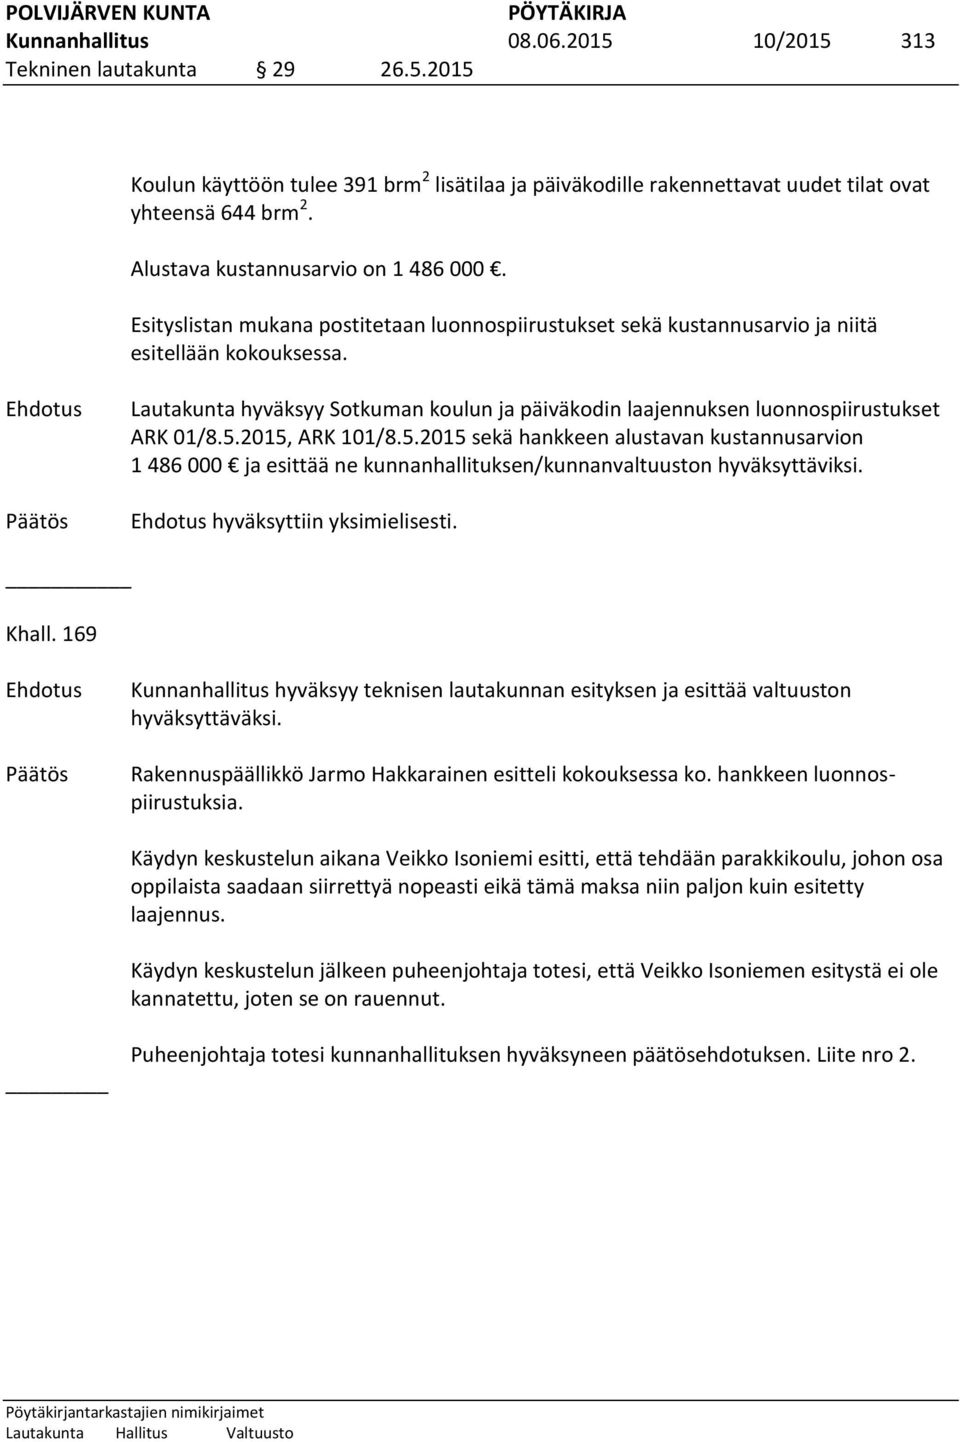 Lautakunta hyväksyy Sotkuman koulun ja päiväkodin laajennuksen luonnospiirustukset ARK 01/8.5.